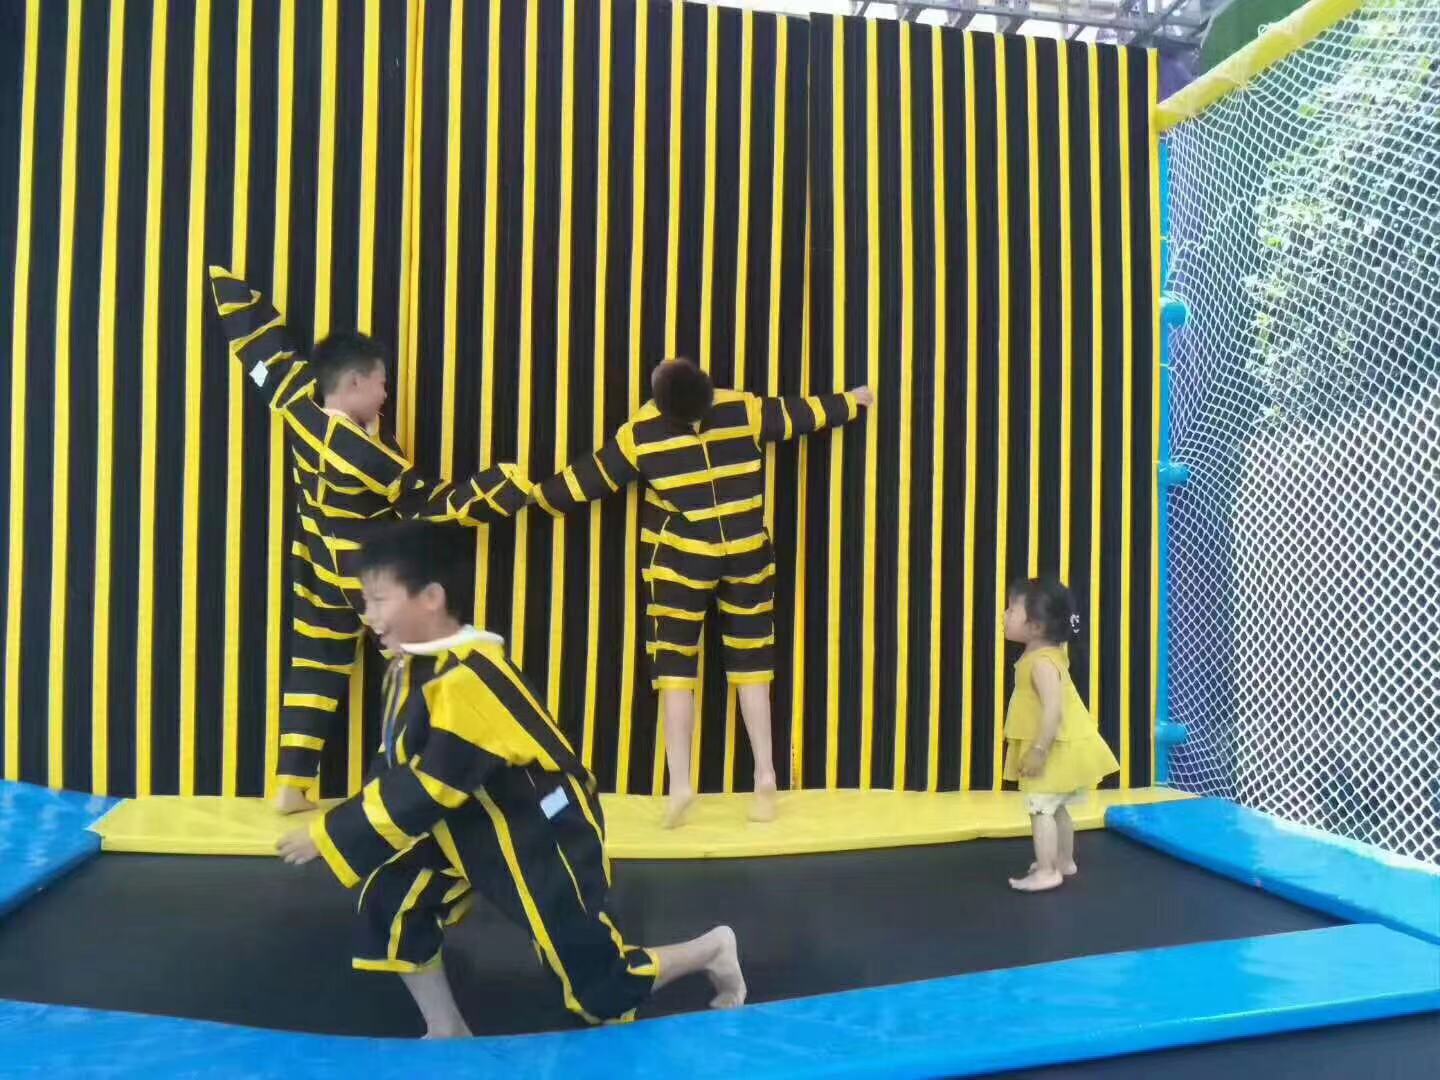 上海市蹦床粘粘乐厂家200平蹦床乐园组合蹦床粘粘乐海洋球池攀岩墙租赁服务 超级蹦床